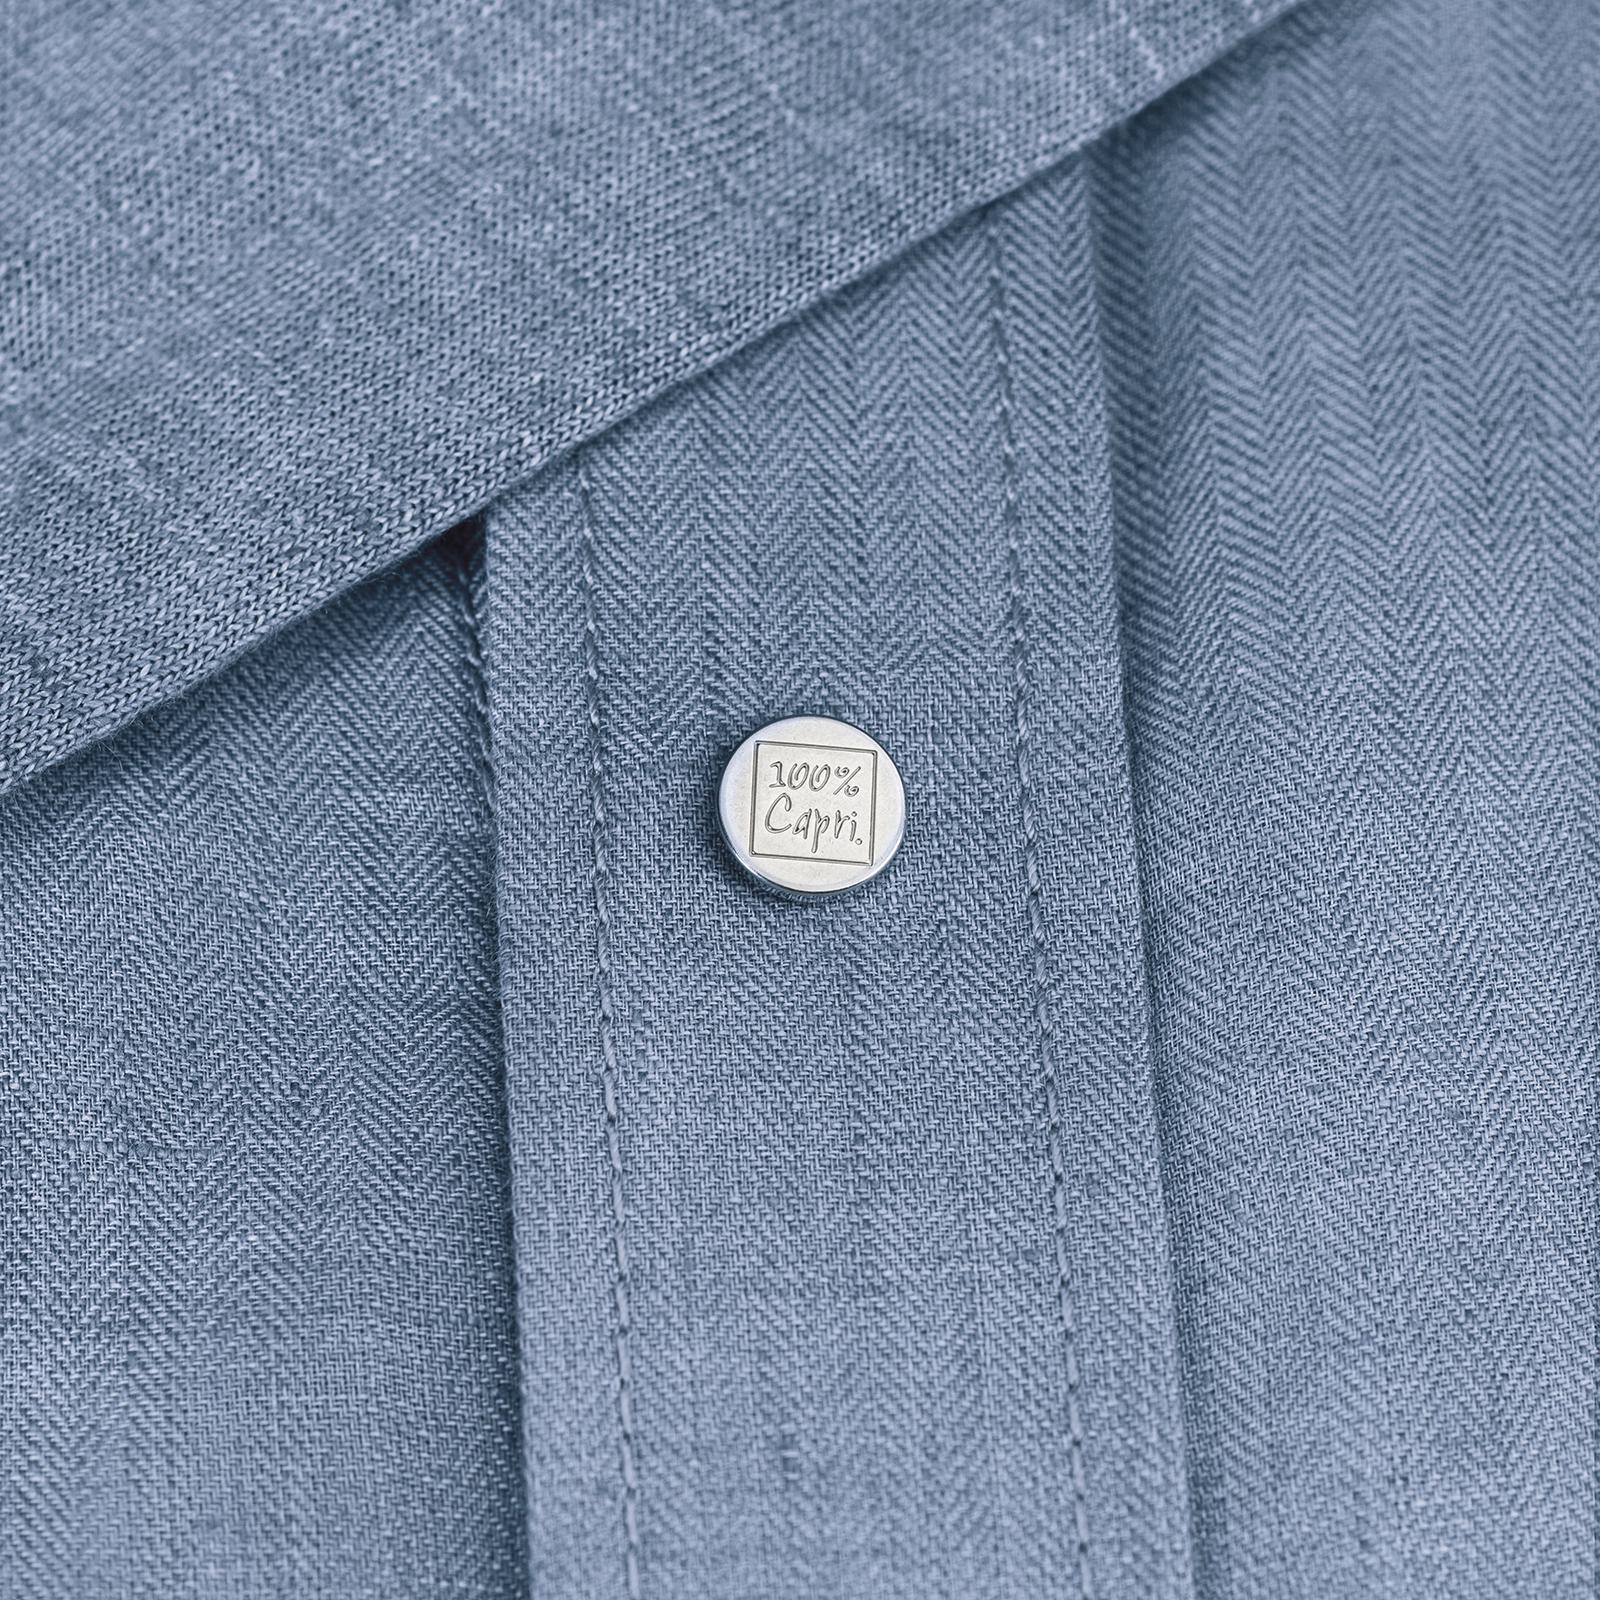 Camicia Cappuccio 100% Capri jeans linen t-shirt detail